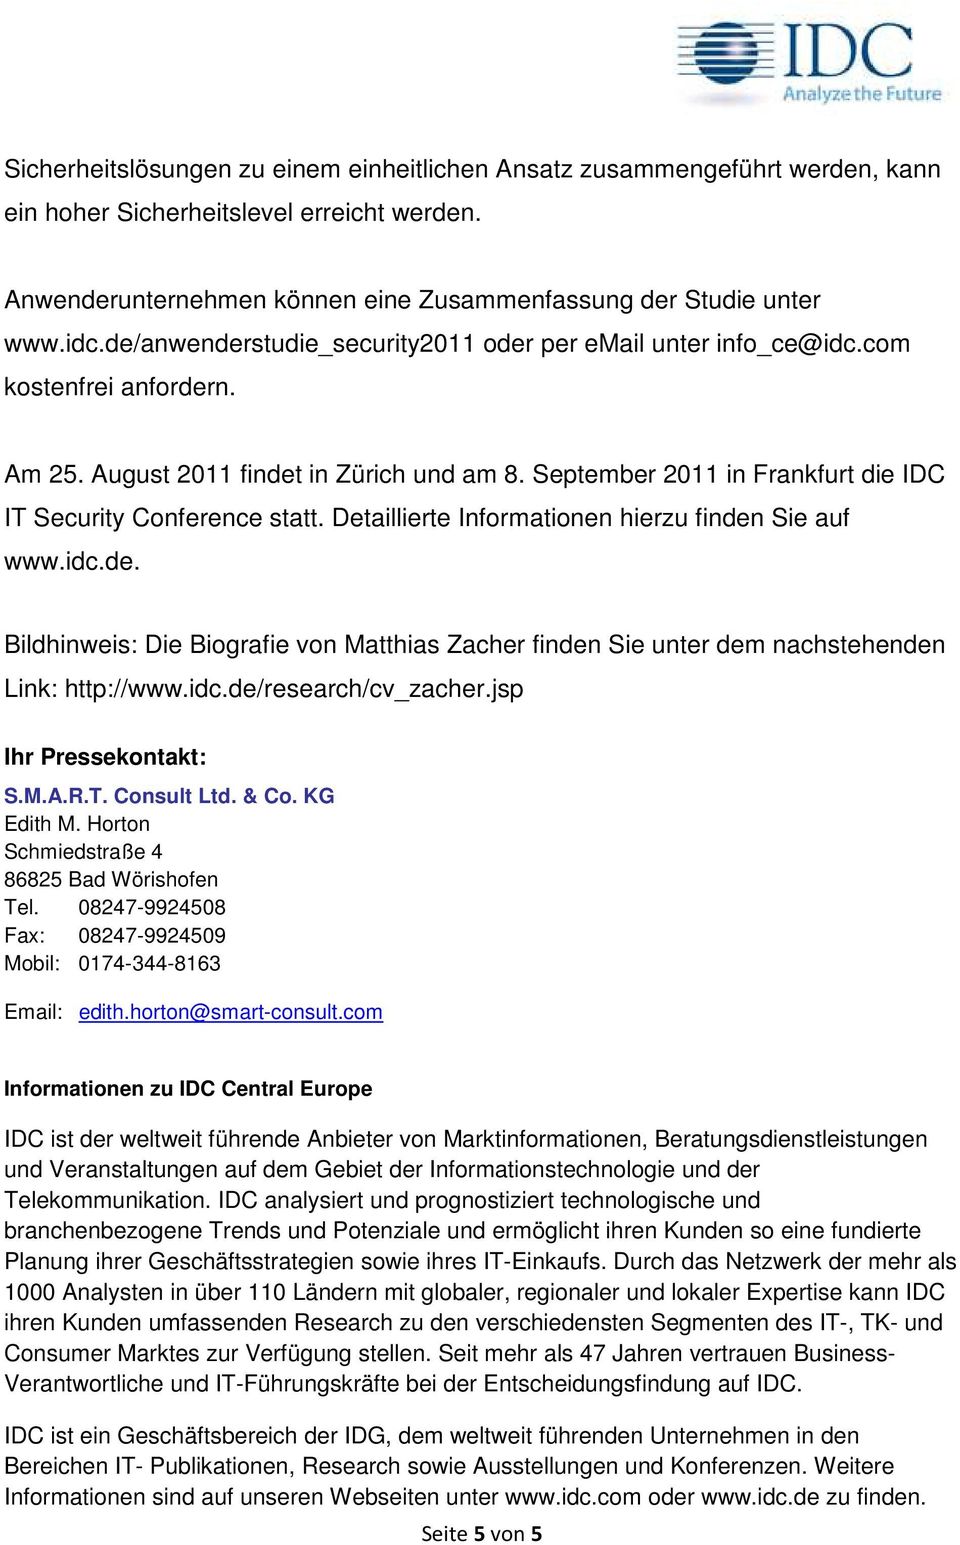 September 2011 in Frankfurt die IDC IT Security Conference statt. Detaillierte Informationen hierzu finden